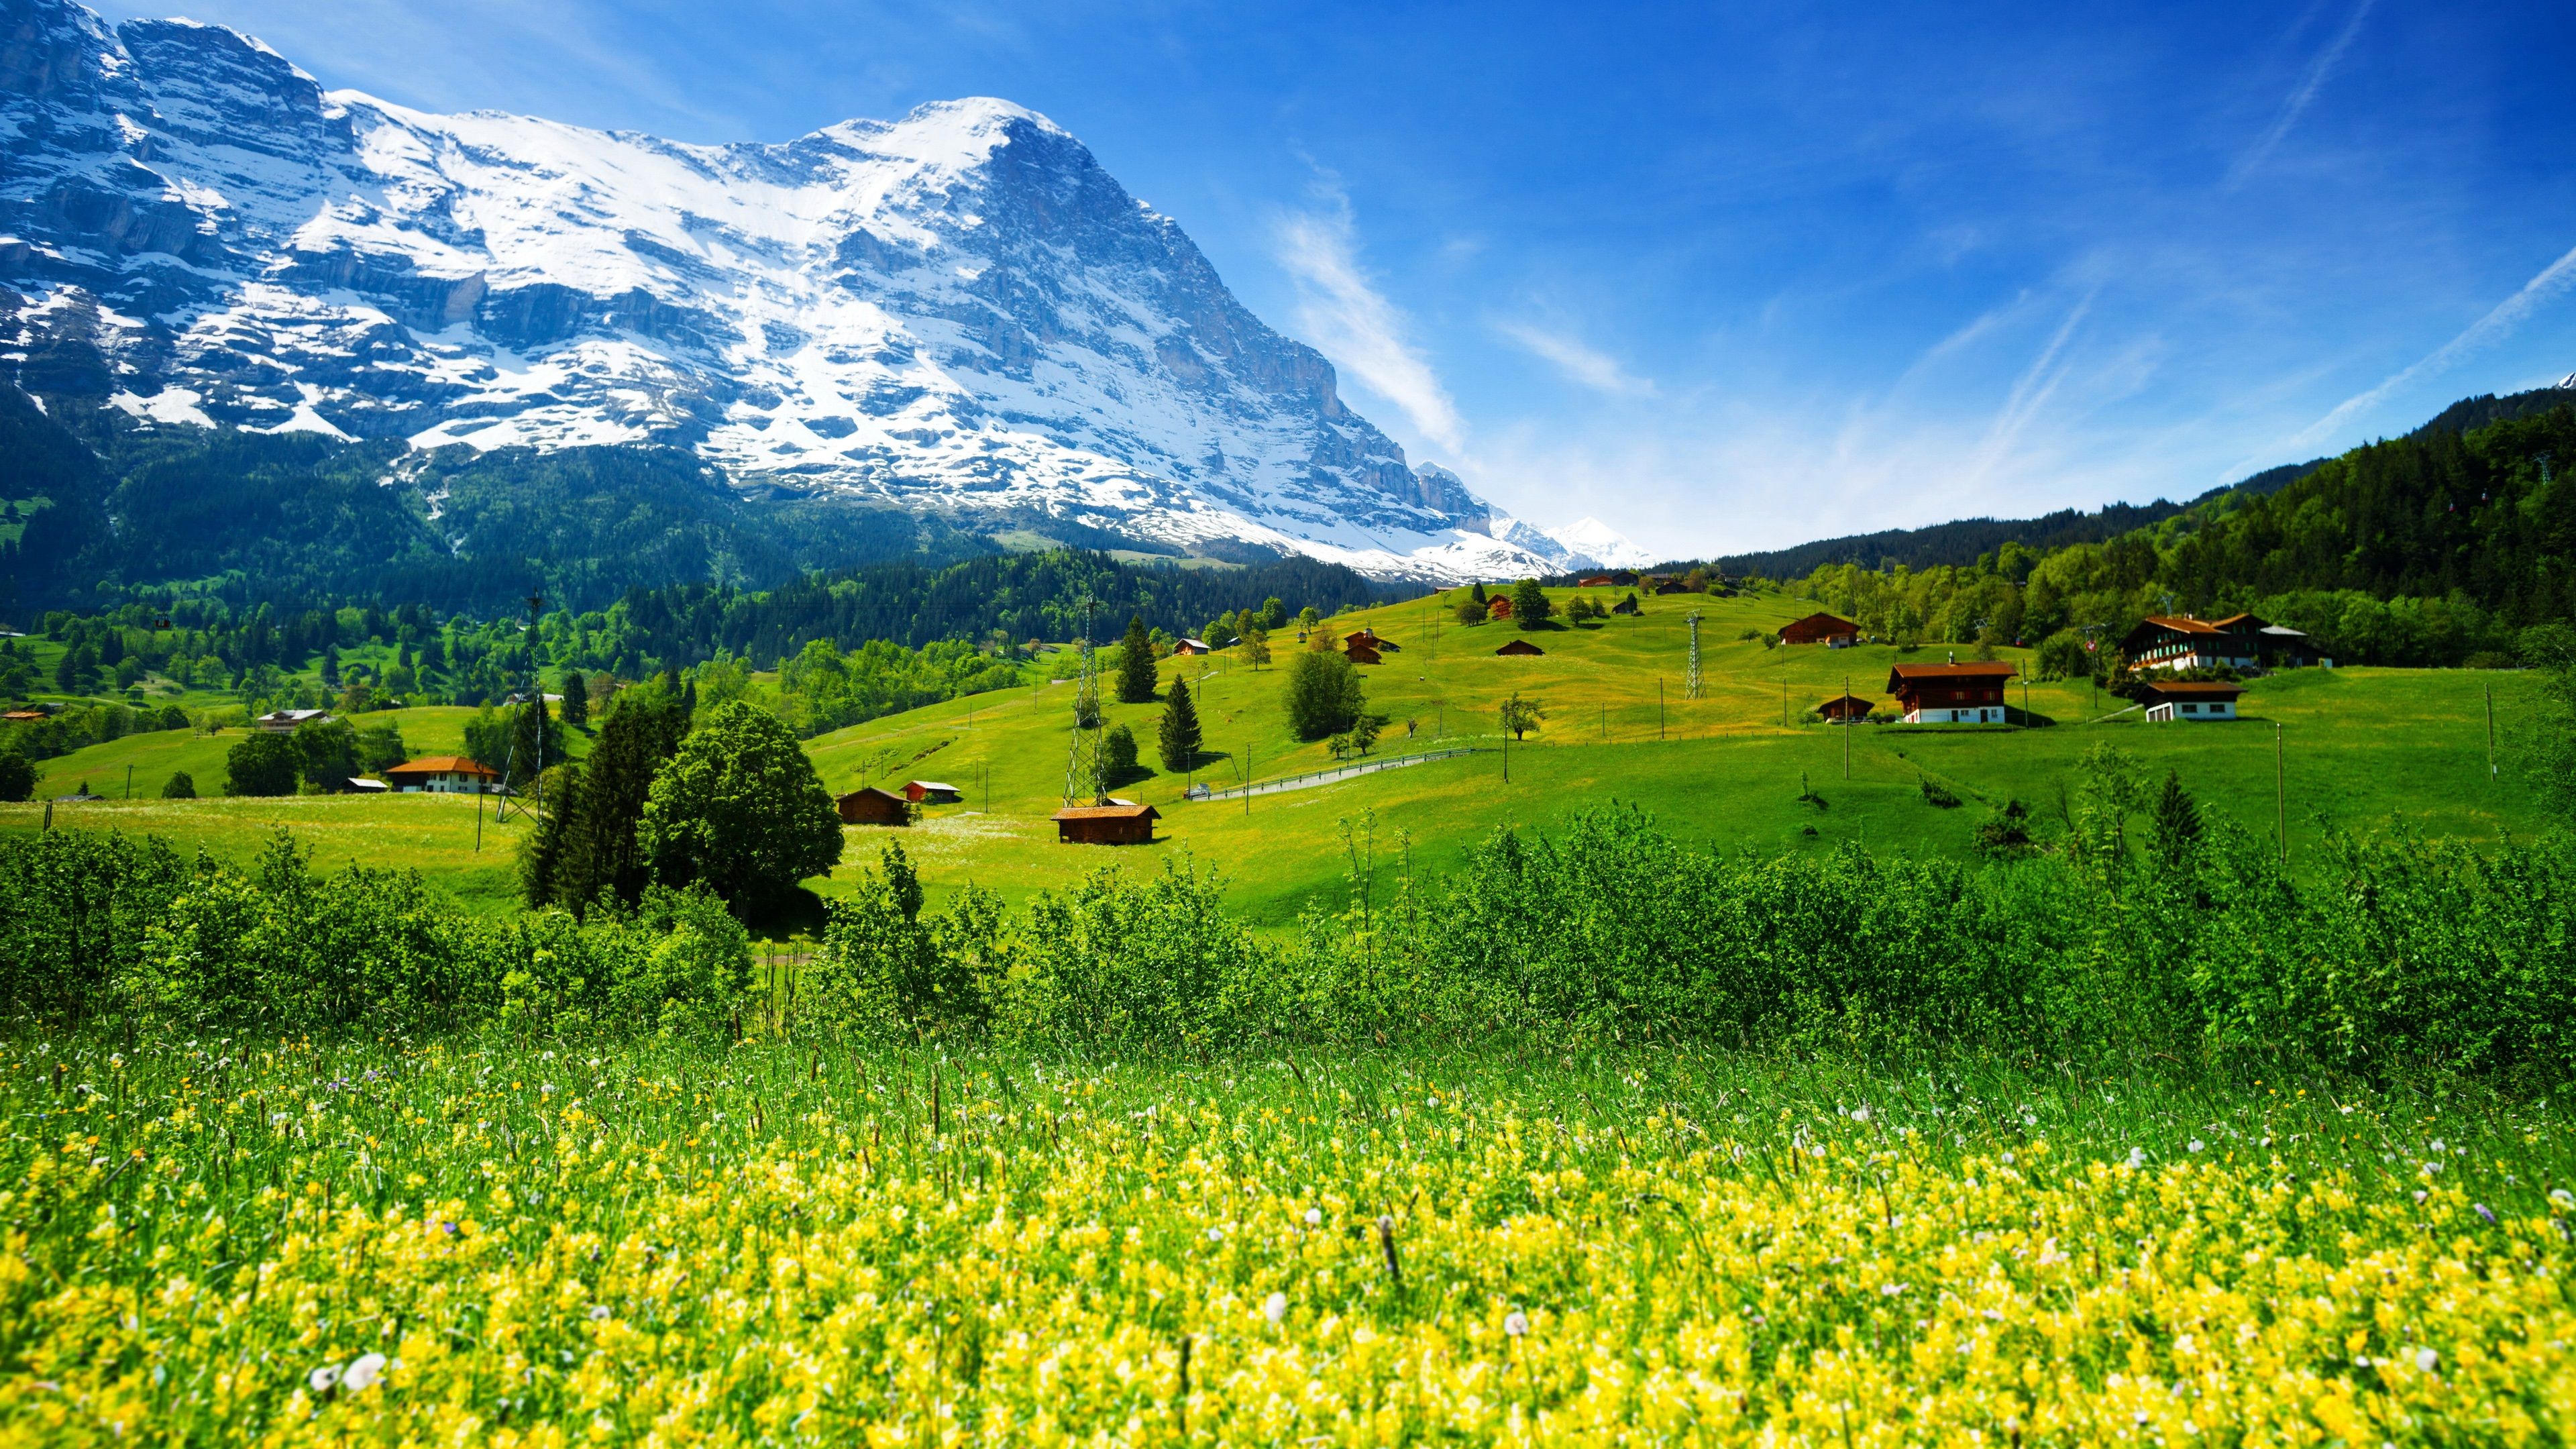  Schweiz Hintergrundbild 3840x2160. Schweiz, Berge, Gletscher Tal, Gras, Wildblumen, Haus 3840x2160 UHD 4K Hintergrundbilder, HD, Bild